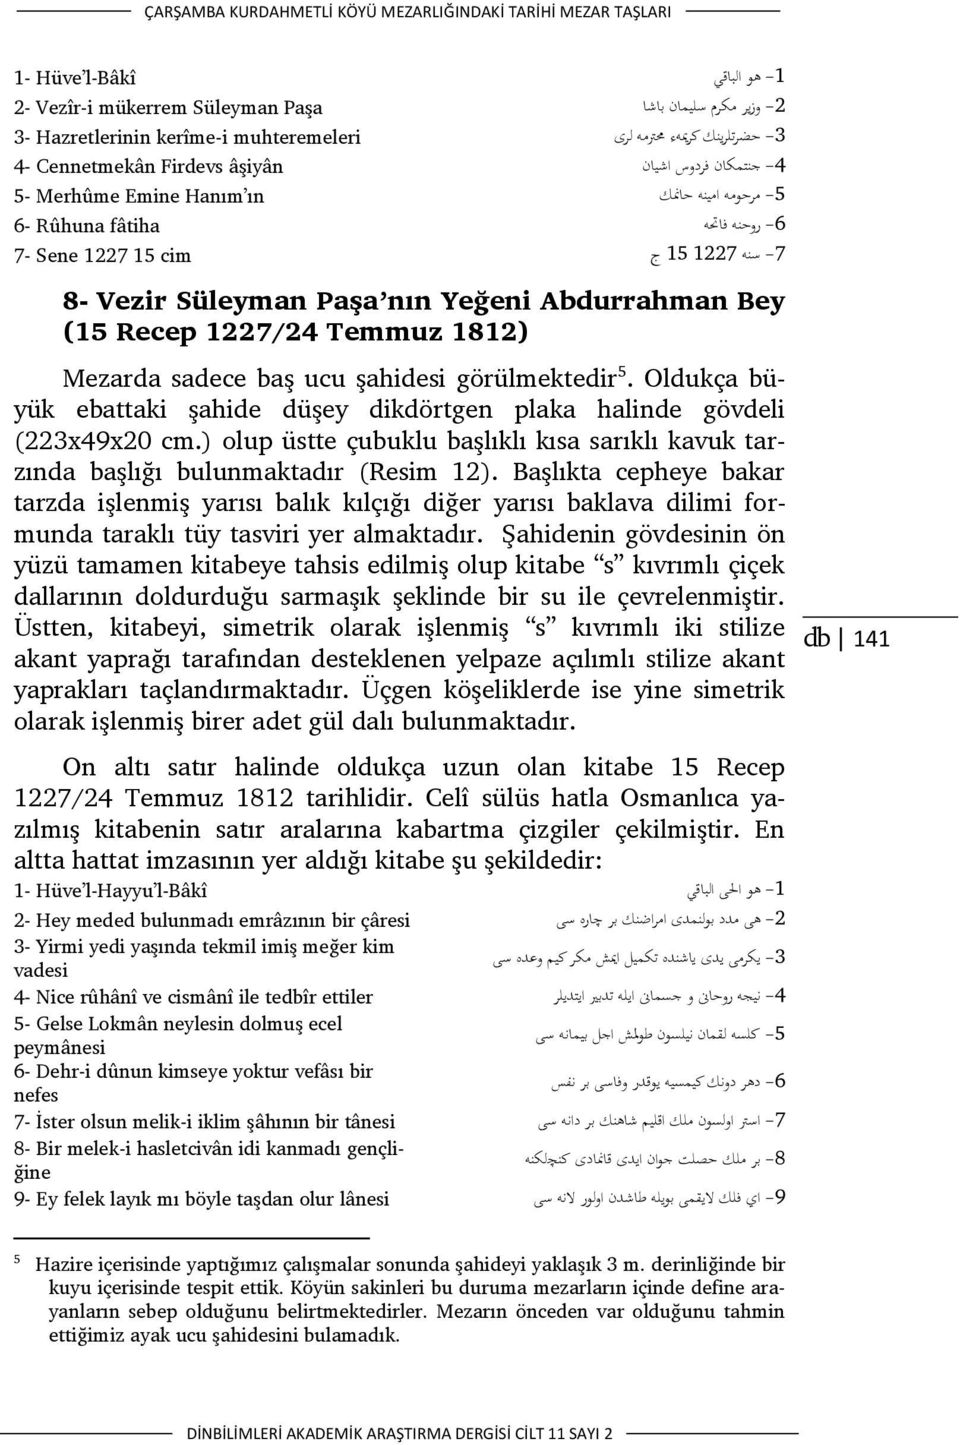 Vezir Süleyman Paşa nın Yeğeni Abdurrahman Bey (15 Recep 1227/24 Temmuz 1812) Mezarda sadece baş ucu şahidesi görülmektedir 5.